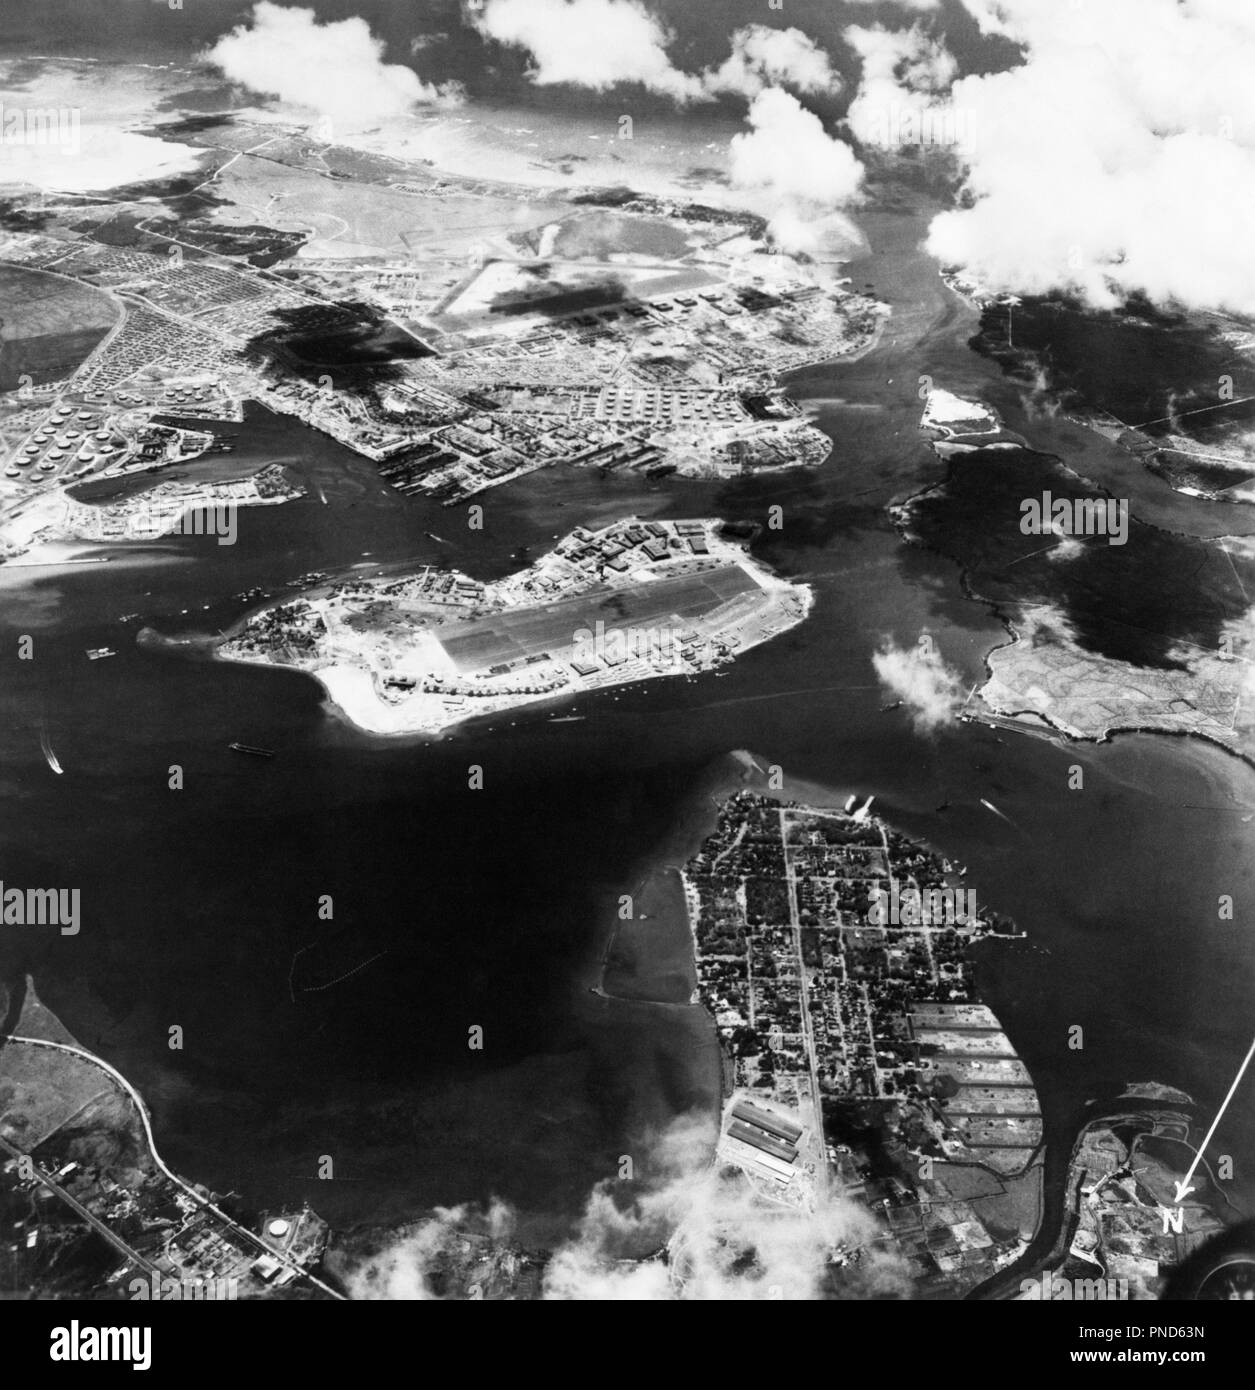 1940 LUFTAUFNAHME von Pearl Harbor in Hawaii VOR ANSCHLAG DURCH DIE JAPANER AM 7. DEZEMBER 1941 - q 74703 CPC 001 HARS INSELN WELTKRIEGE WELTKRIEG ZWEITEN WELTKRIEG BOMBENANGRIFFE DES ZWEITEN WELTKRIEGS DEZEMBER HI 7 WELTKRIEG 2 widersprüchliche Dezember 7 1941 1941 LUFTBILD KÄMPFEN SCHWARZ UND WEISS HAWAII INSELN NIEDERTRACHT ALTMODISCH DEN PAZIFISCHEN INSELN VOR Stockfoto